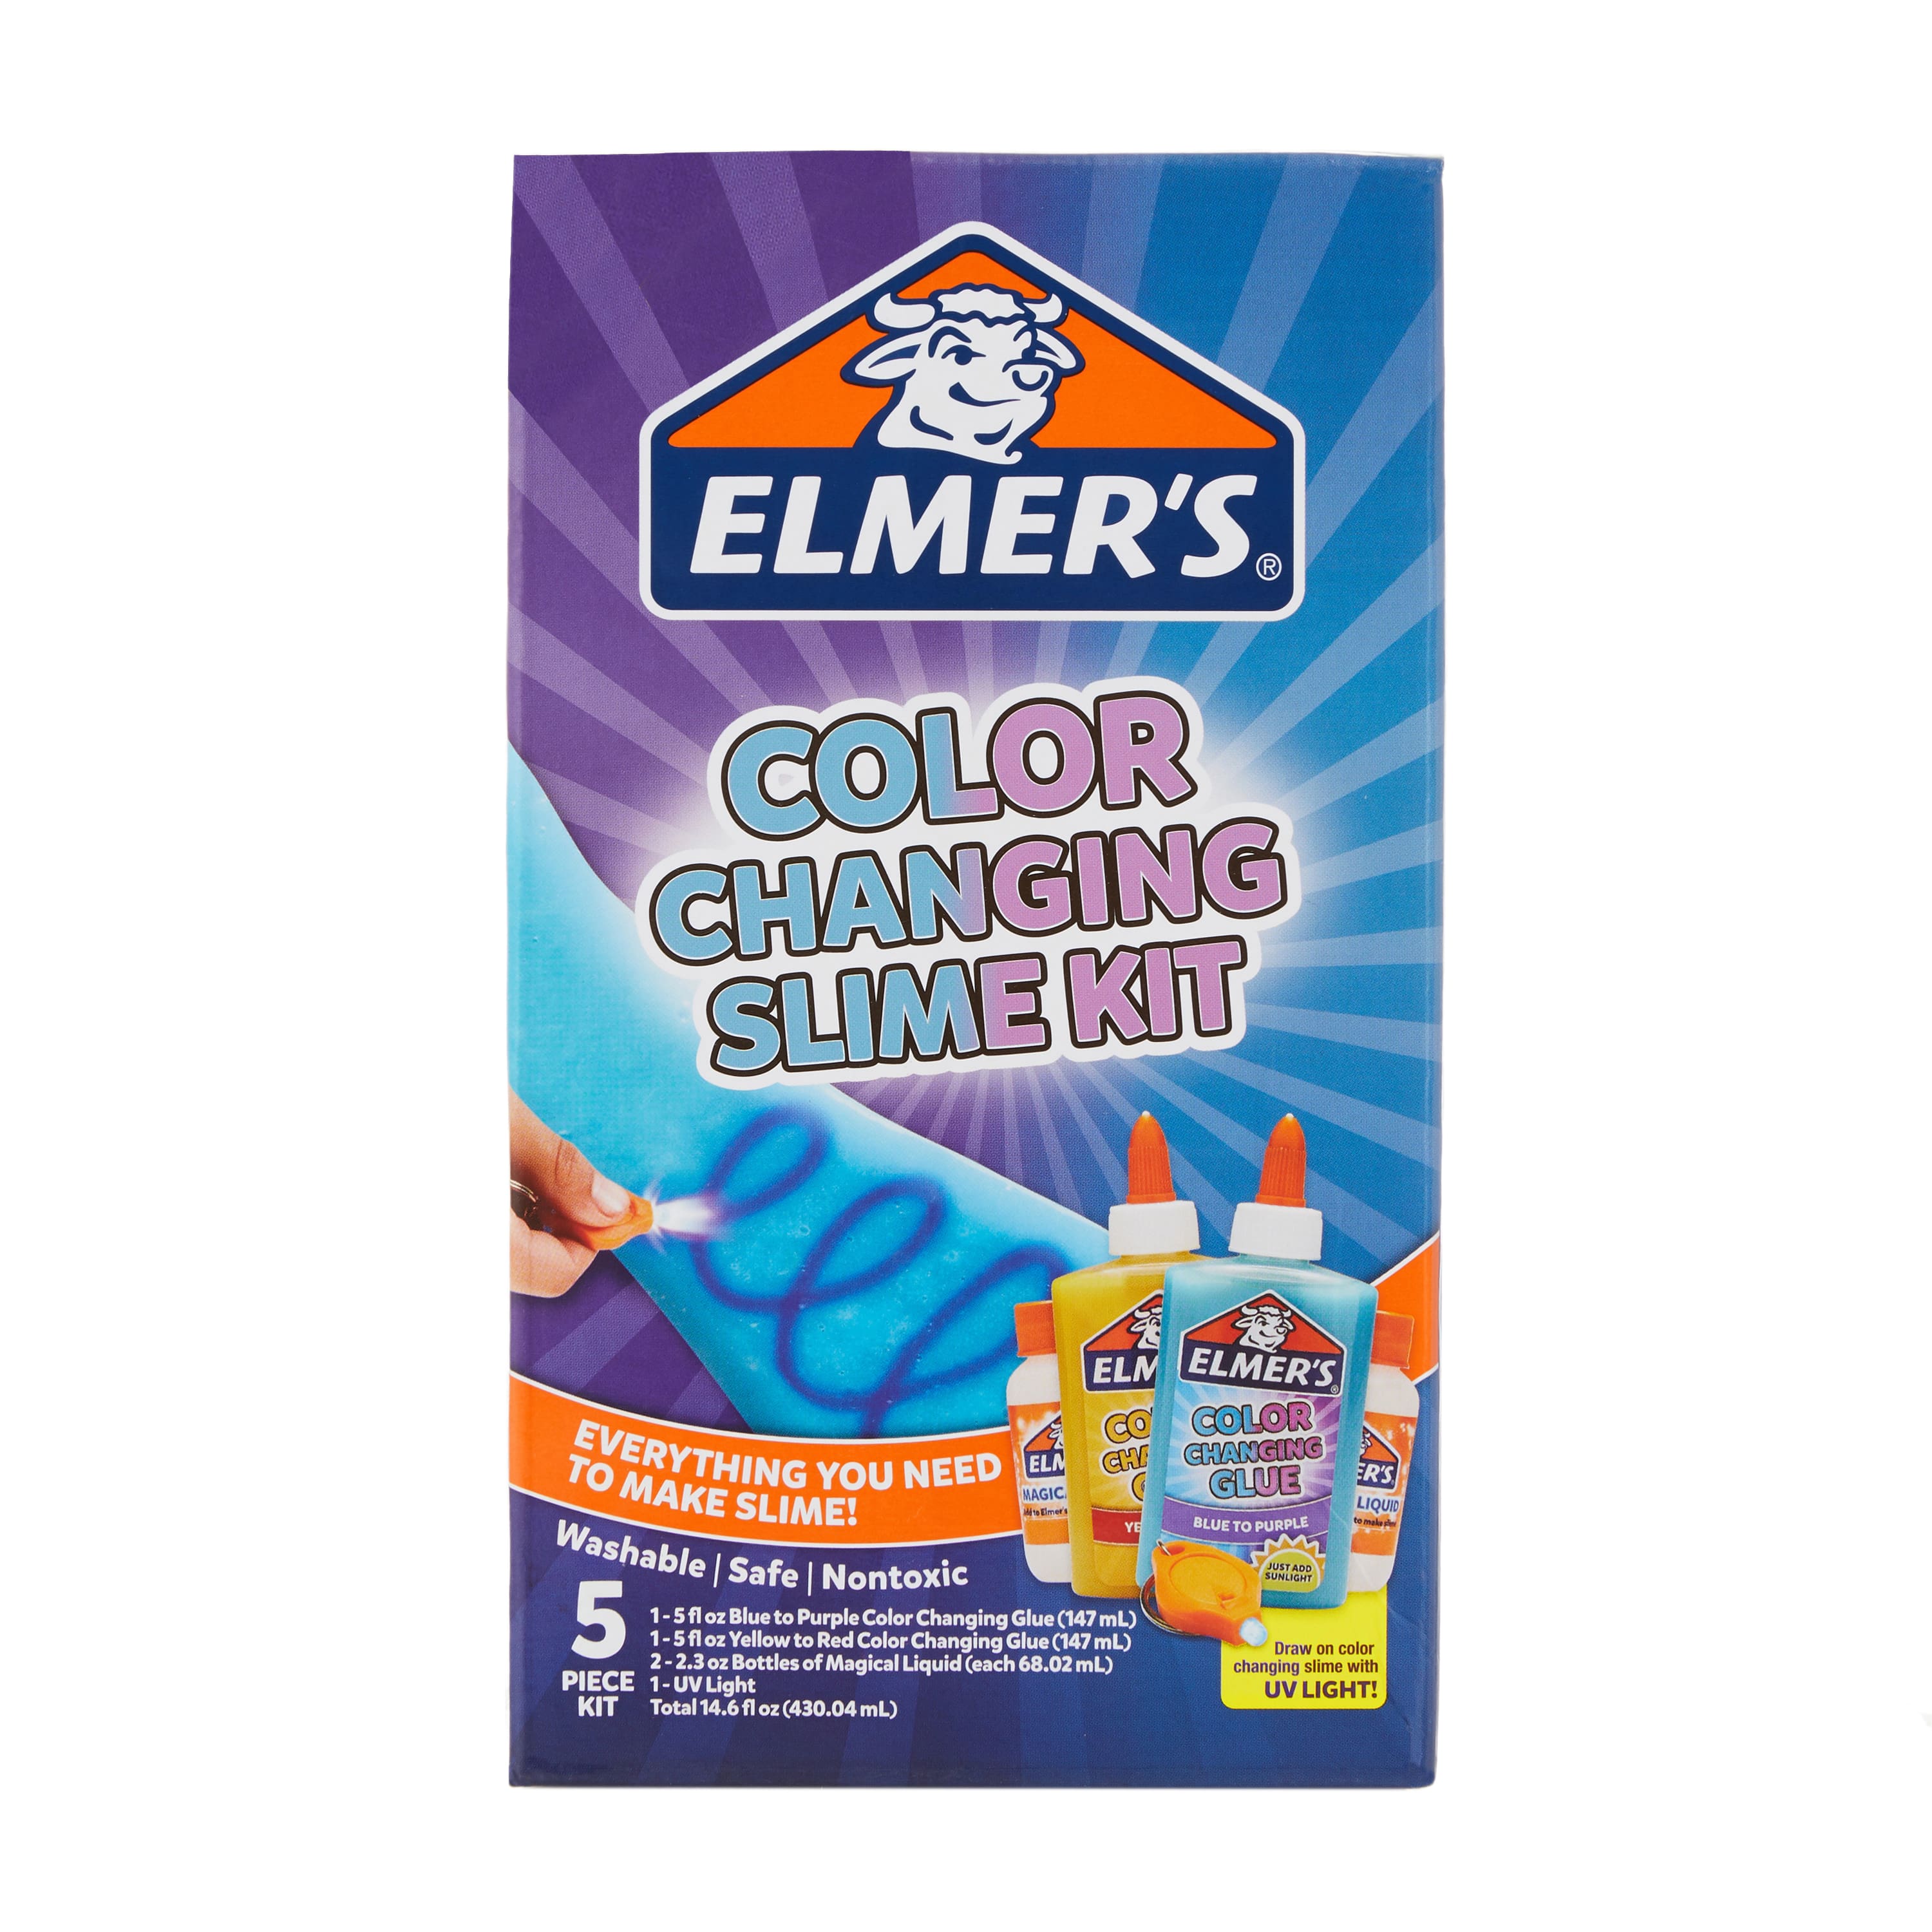 Elmer's elmer's celebration slime kit